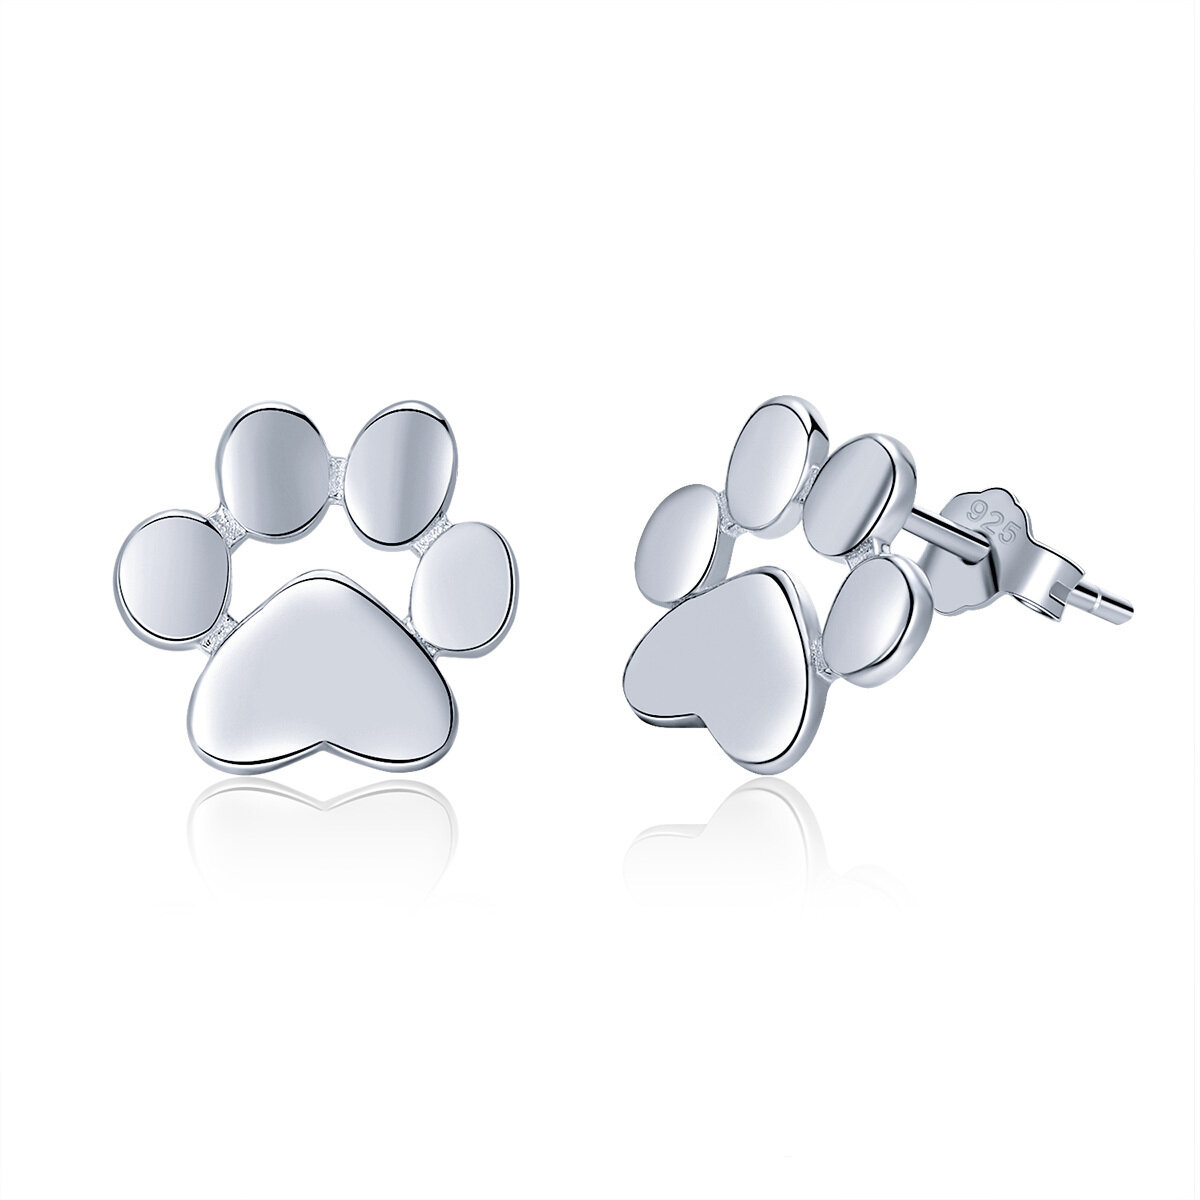 GemKing Pets' footprint S925 Sterling Silver Earrings